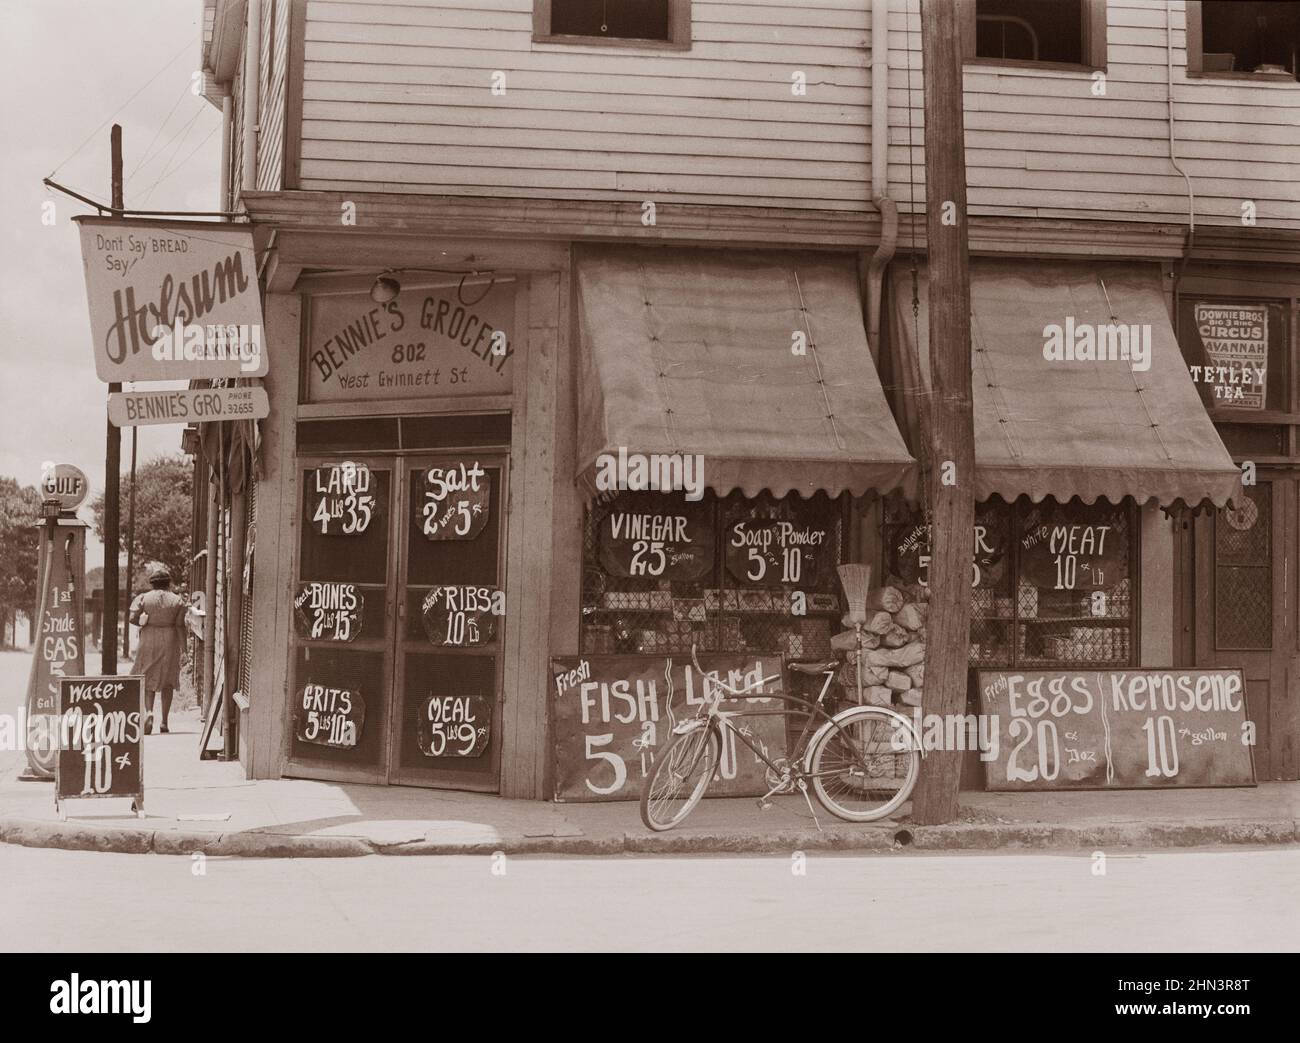 Foto d'epoca del negozio di alimentari afroamericano. Sylvania, Georgia. Prezzi pubblicati all'esterno. Giugno 1939 da Marion Post Wolcott, fotografo Foto Stock